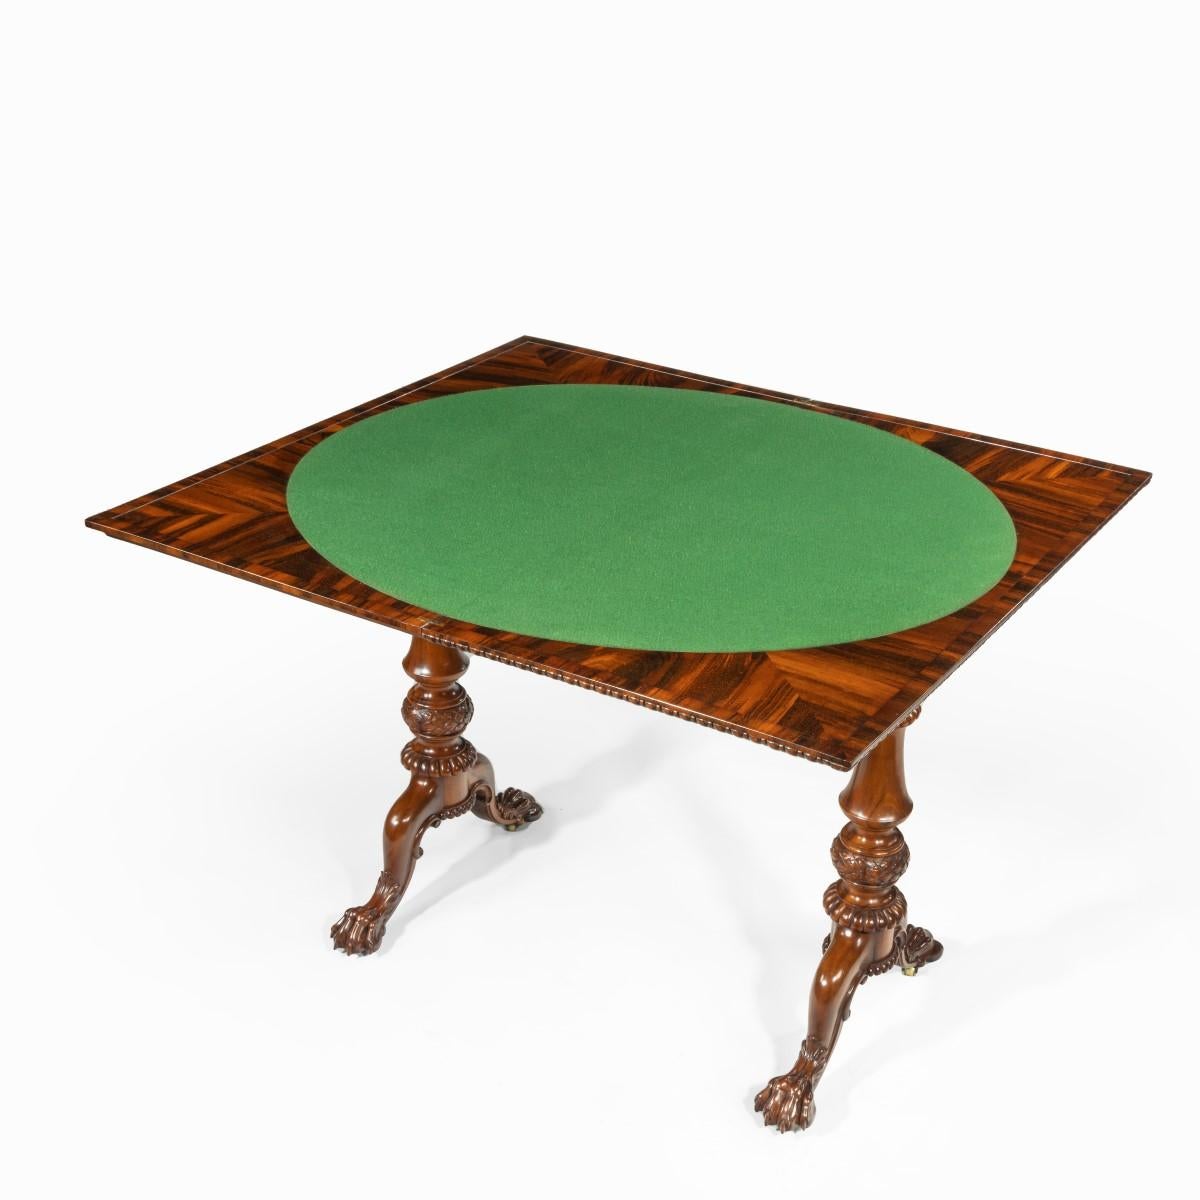 Ein früher viktorianischer Goncalo Alves Kartentisch, der Gillows zugeschrieben wird. Die aufklappbare rechteckige Platte mit Wulst- und Rolleneinfassung, der Innenraum aus grünem Baisé (ersetzt) innerhalb von viertelfurnierten Ecken, die gedrehten,